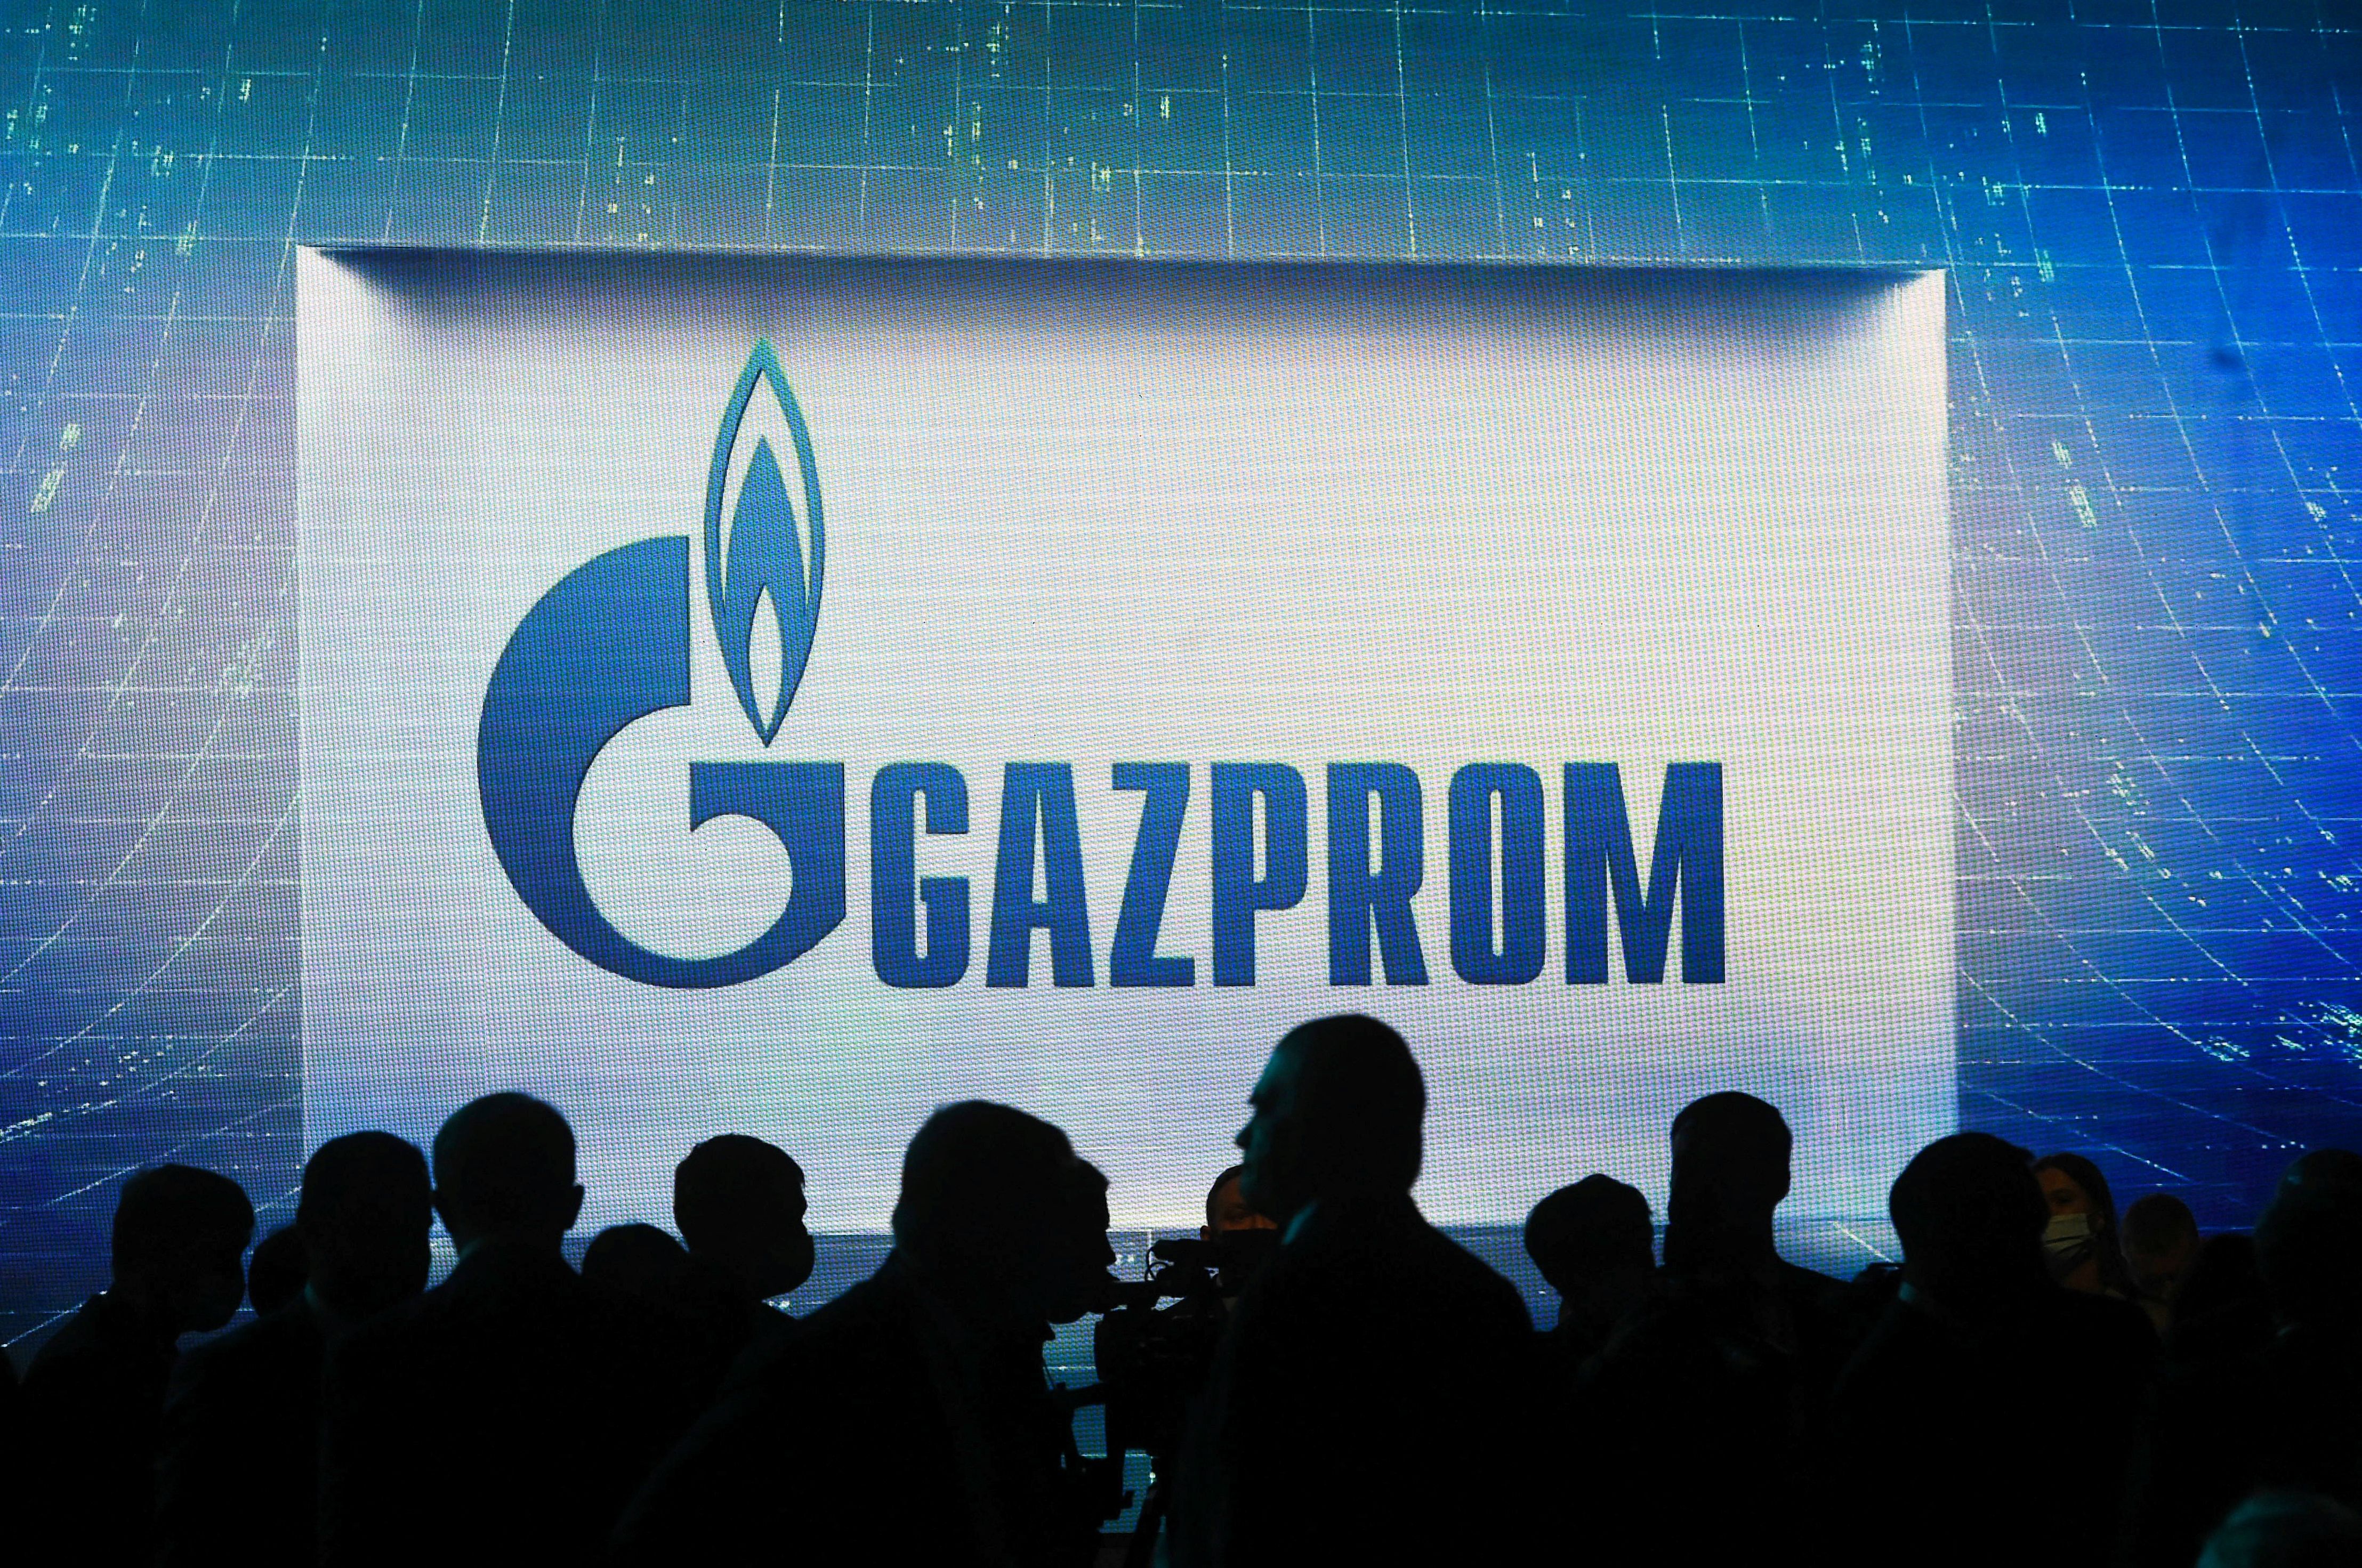 Gazprom es la mayor empresa de gas natural del mundo y suministra el 40 por ciento de las necesidades energéticas de Europa